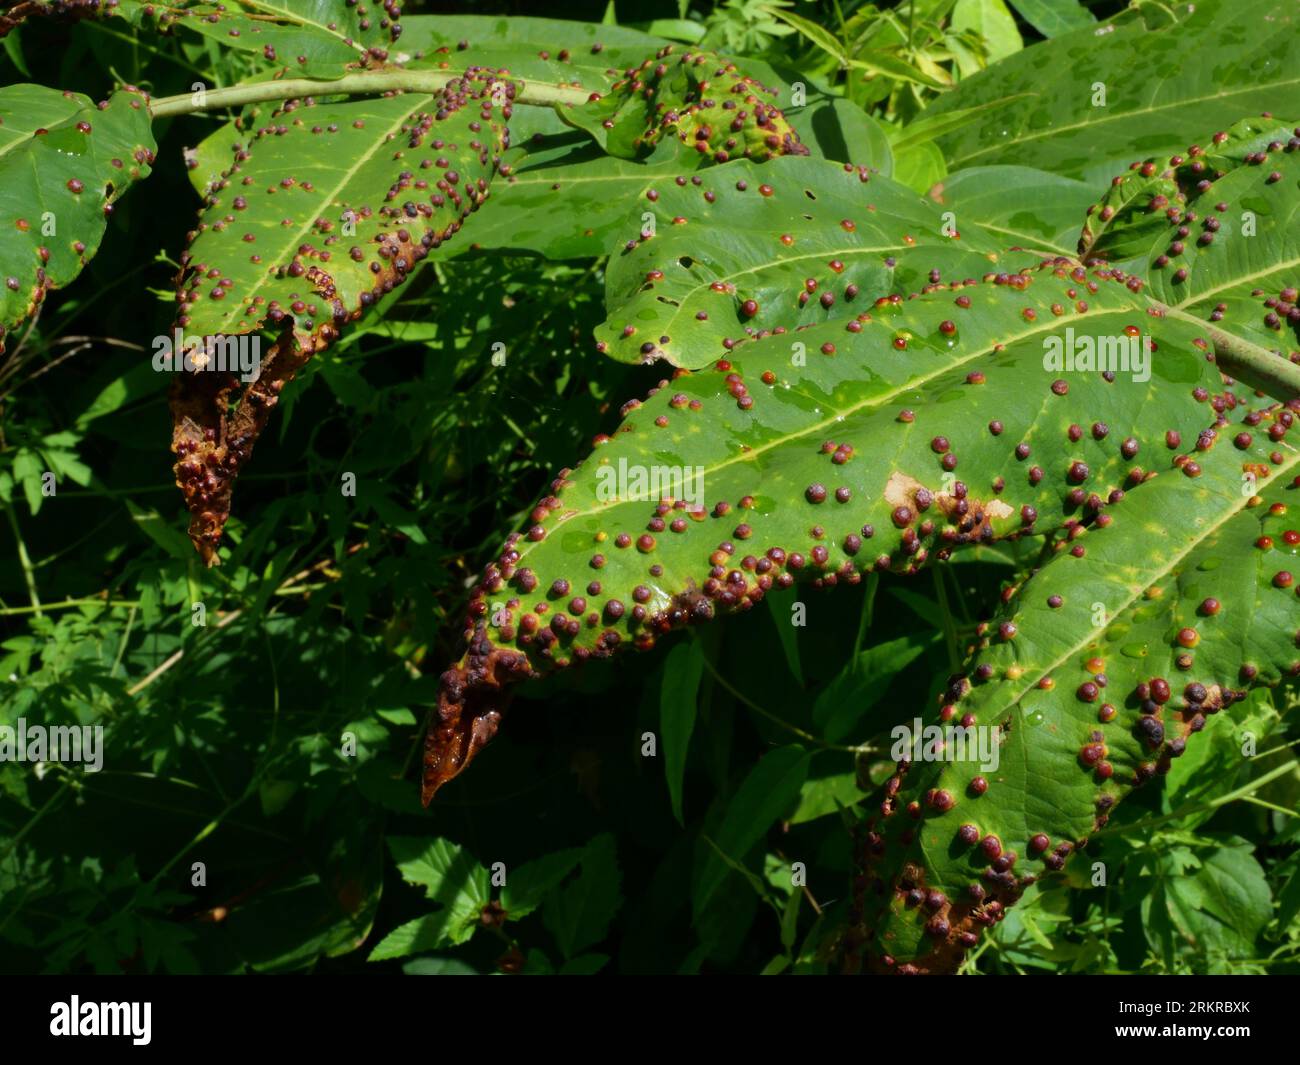 Il bottone tondo marrone che nasconde le larve del calabrone parassita su foglie verdi, foglia infestata dalle uova della vespa eucalipto Foto Stock